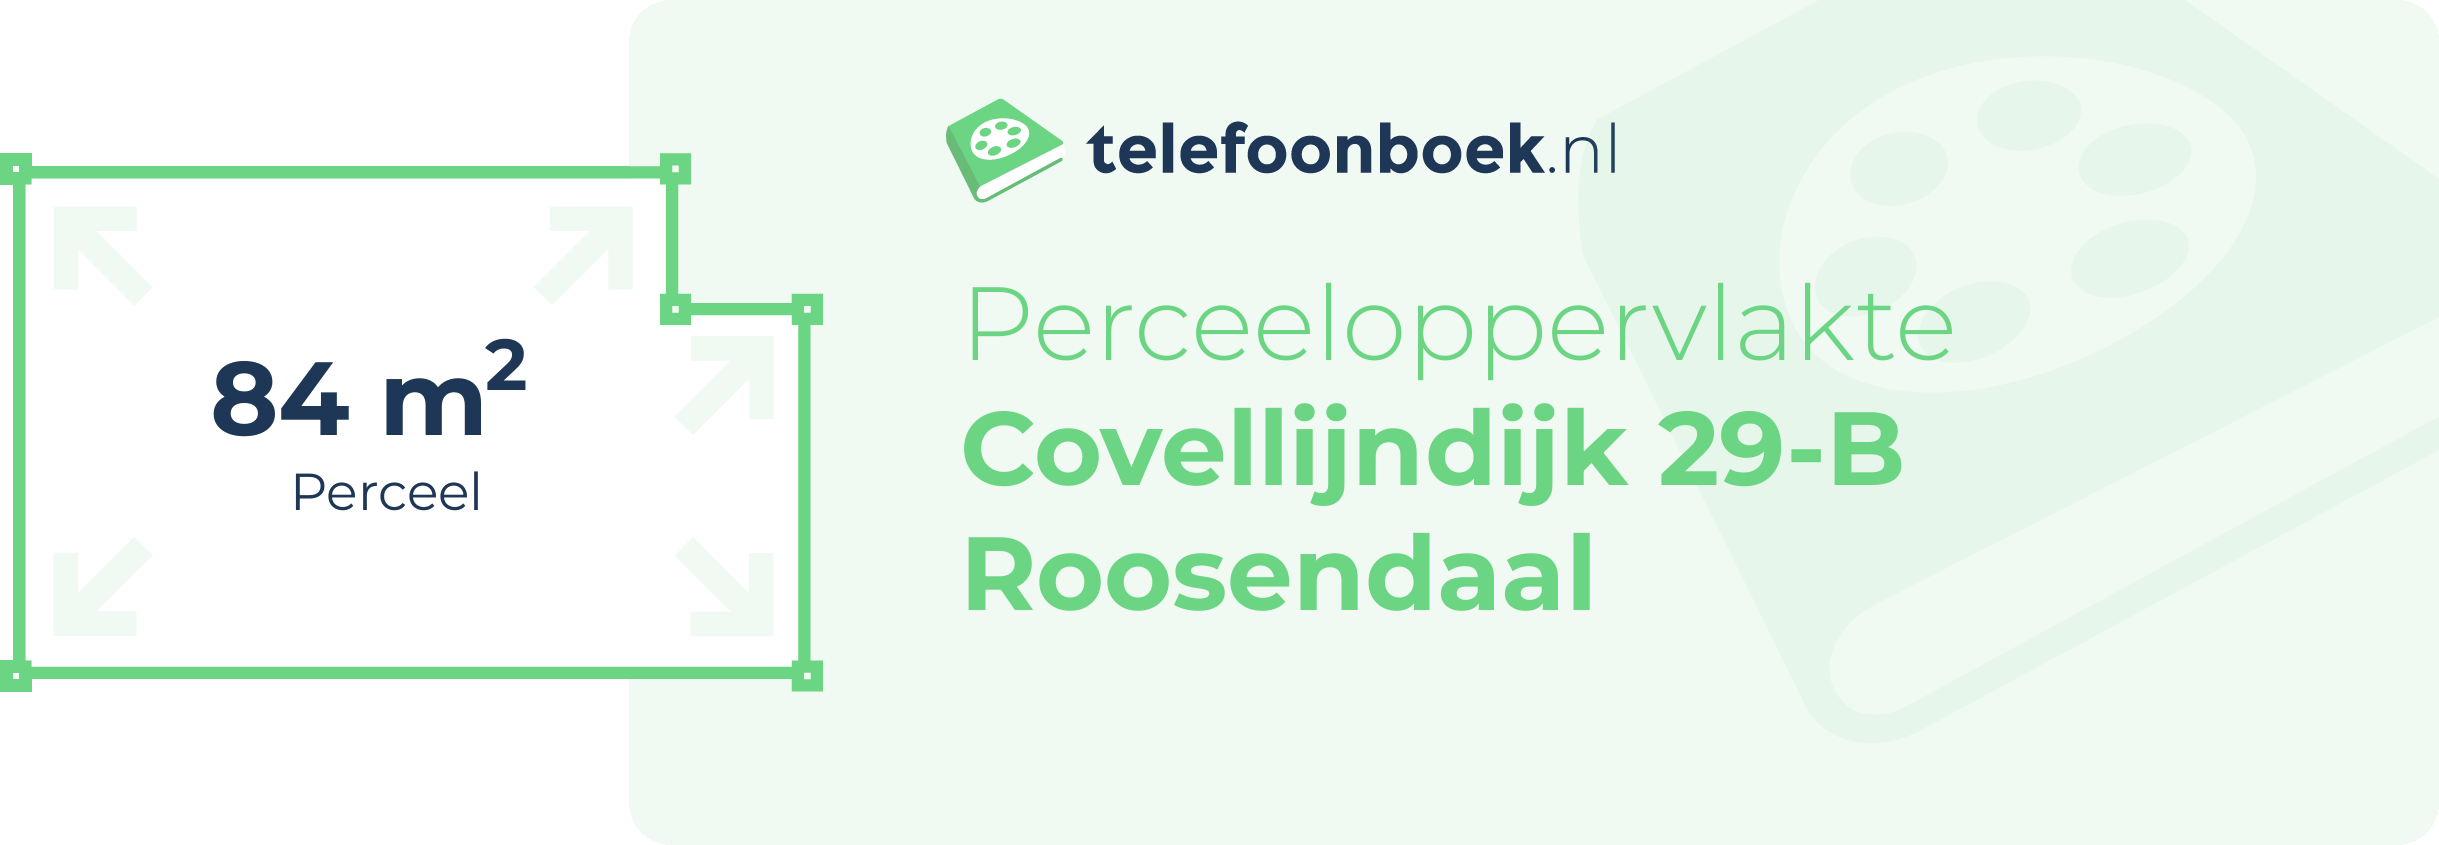 Perceeloppervlakte Covellijndijk 29-B Roosendaal